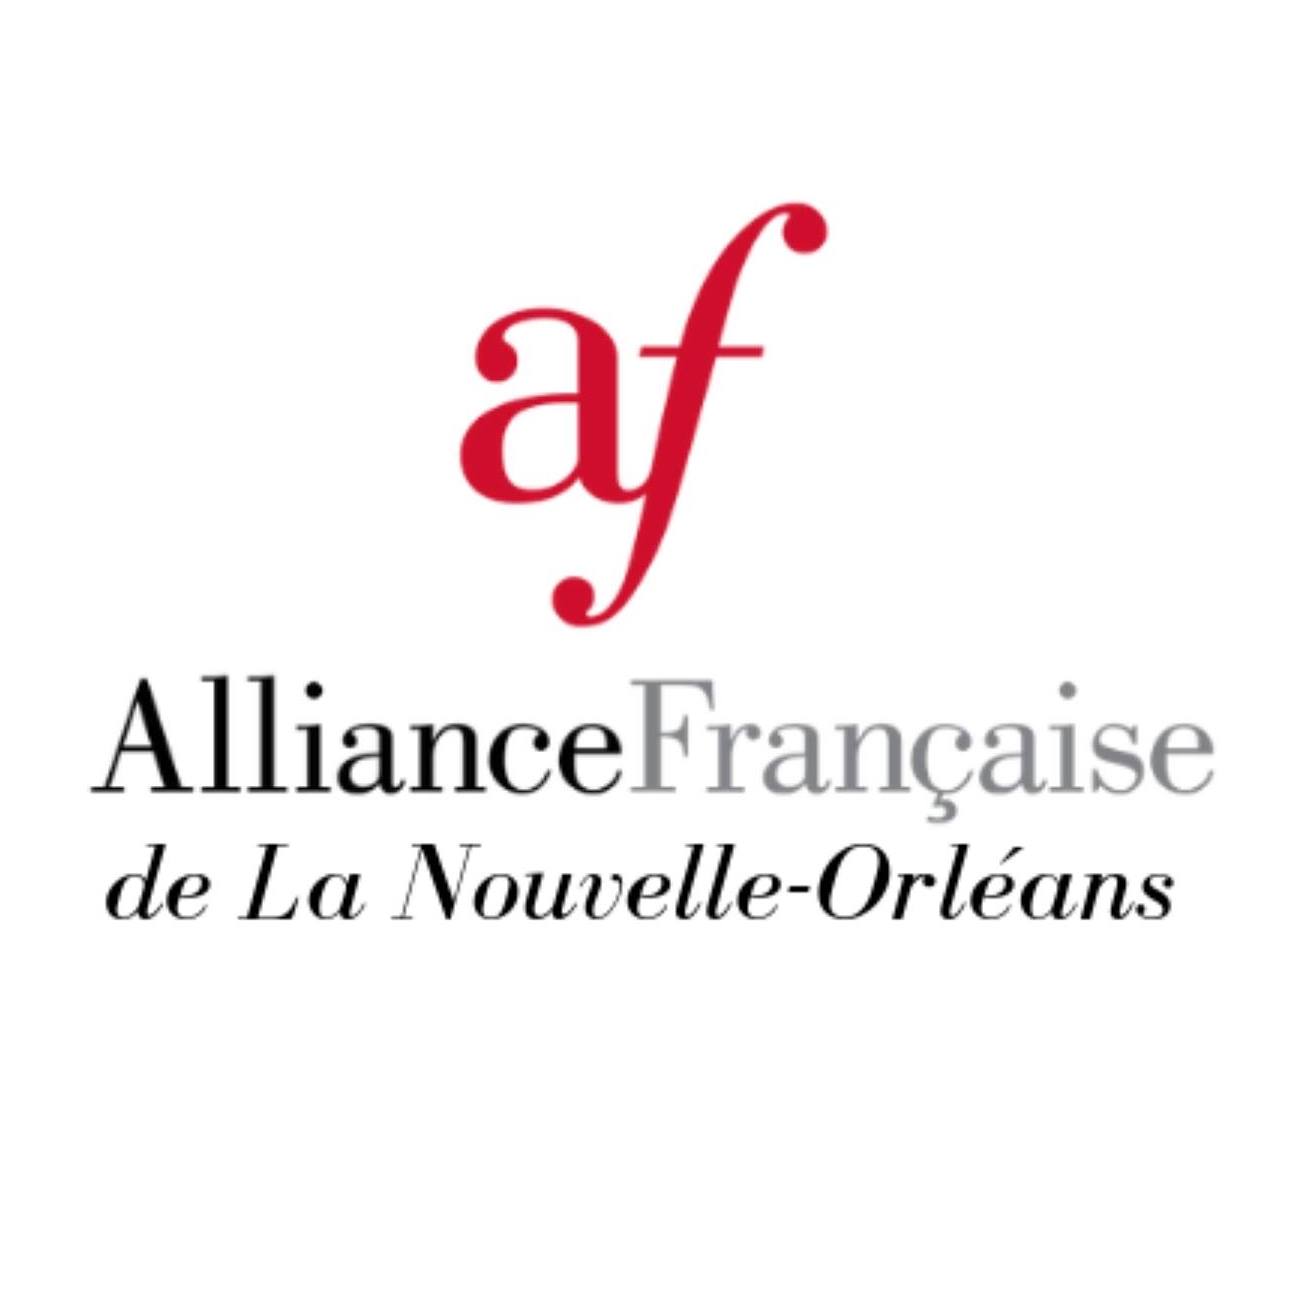 French Non Profit Organization in Louisiana - Alliance Francaise de la Nouvelle Orléans